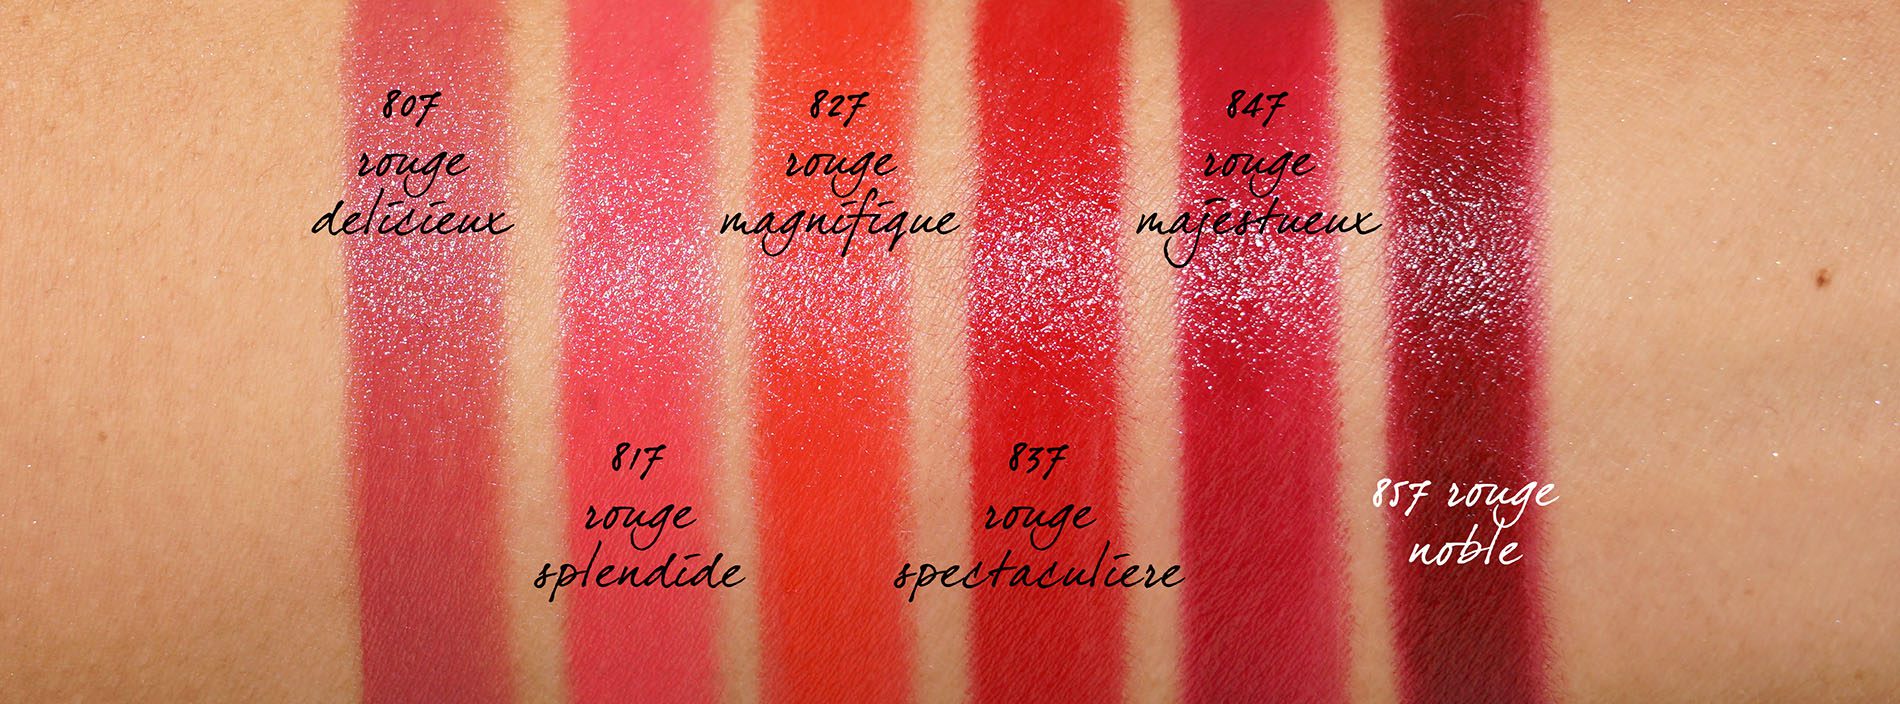 CHANEL+Rouge+Allure+Luminous+Intense+Lip+Colour+827+Magnifique+Limited+Edition  for sale online